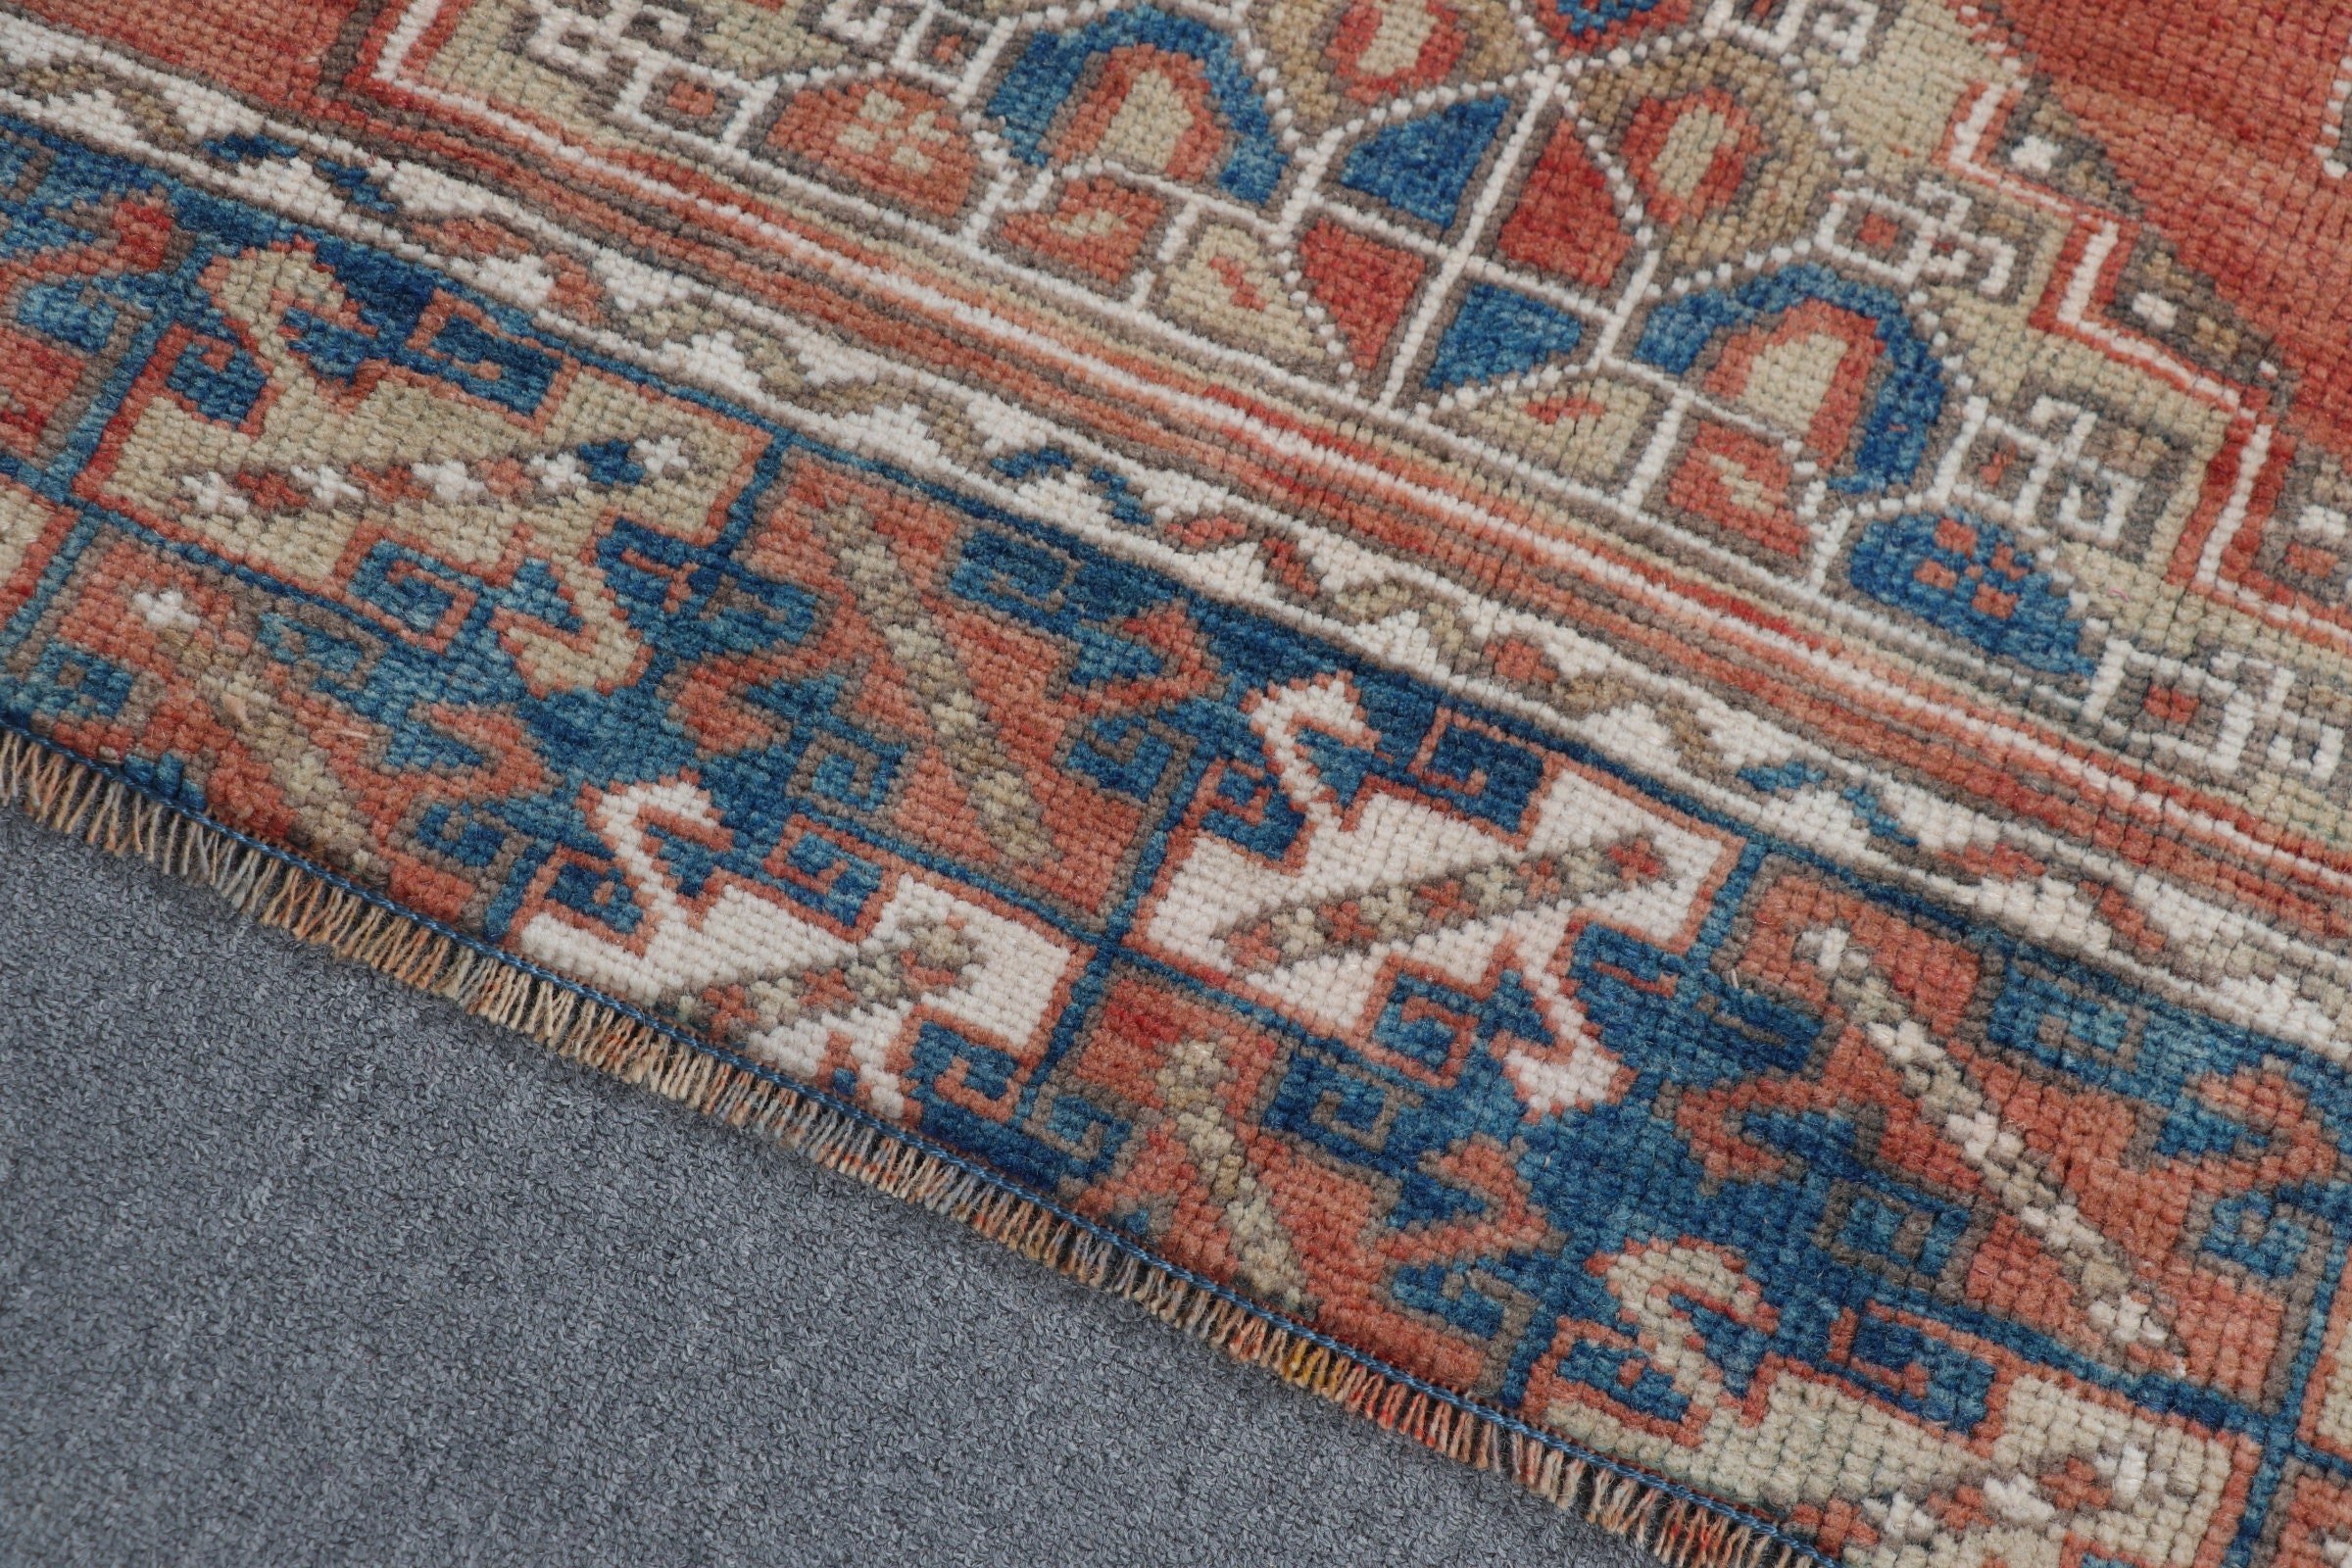 Oriental Rugs, Turkey Rug, Living Room Rugs, Floor Rug, 4.6x6.9 ft Area Rug, Turkish Rug, Vintage Rug, Orange Anatolian Rugs, Kitchen Rug